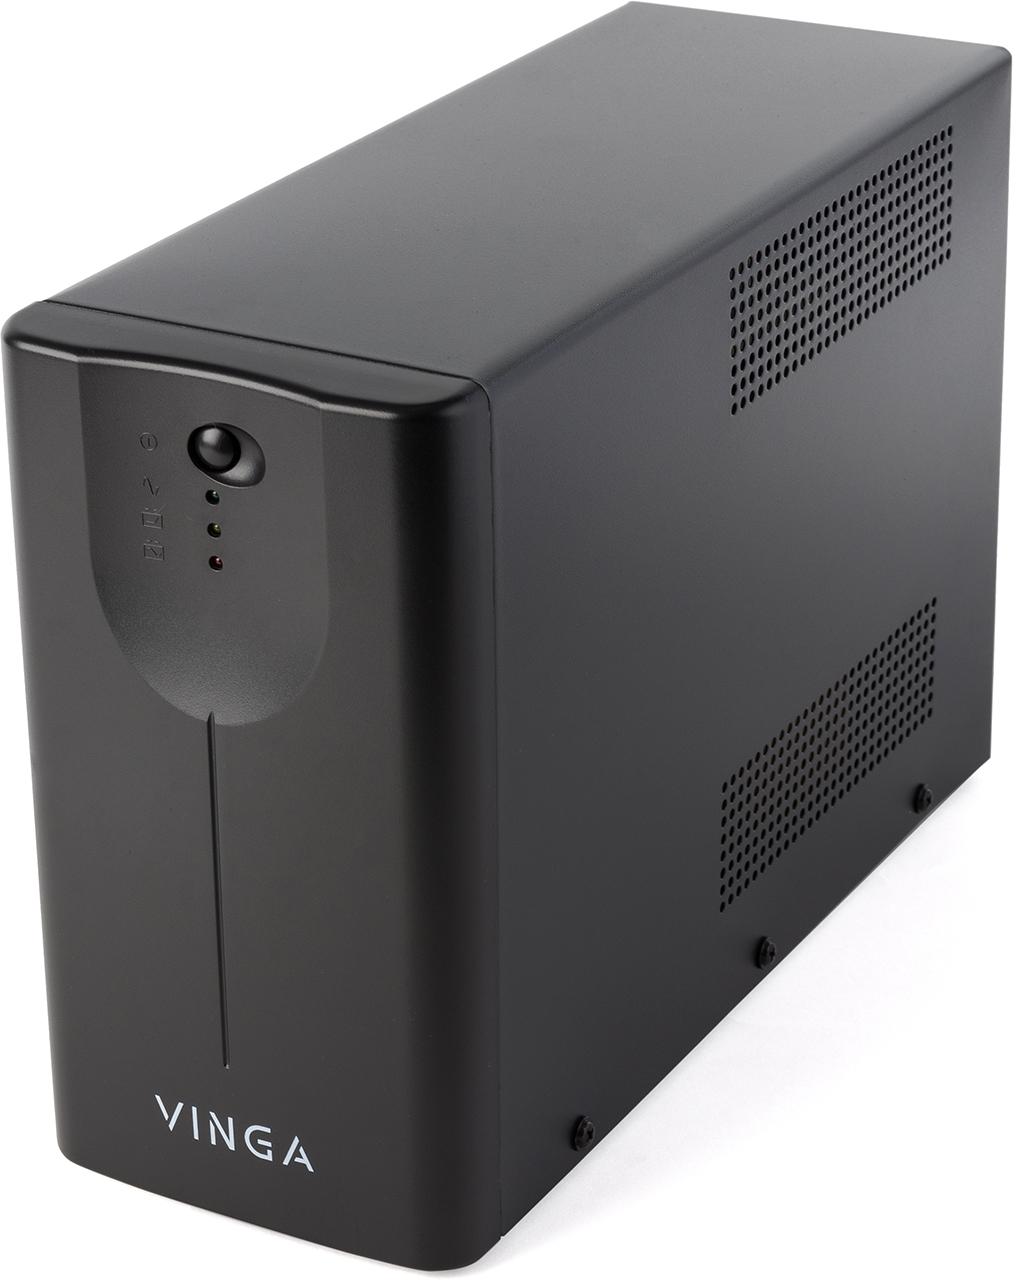 Источник бесперебойного питания Vinga LED 800VA (VPE-800MU) характеристики - фотография 7